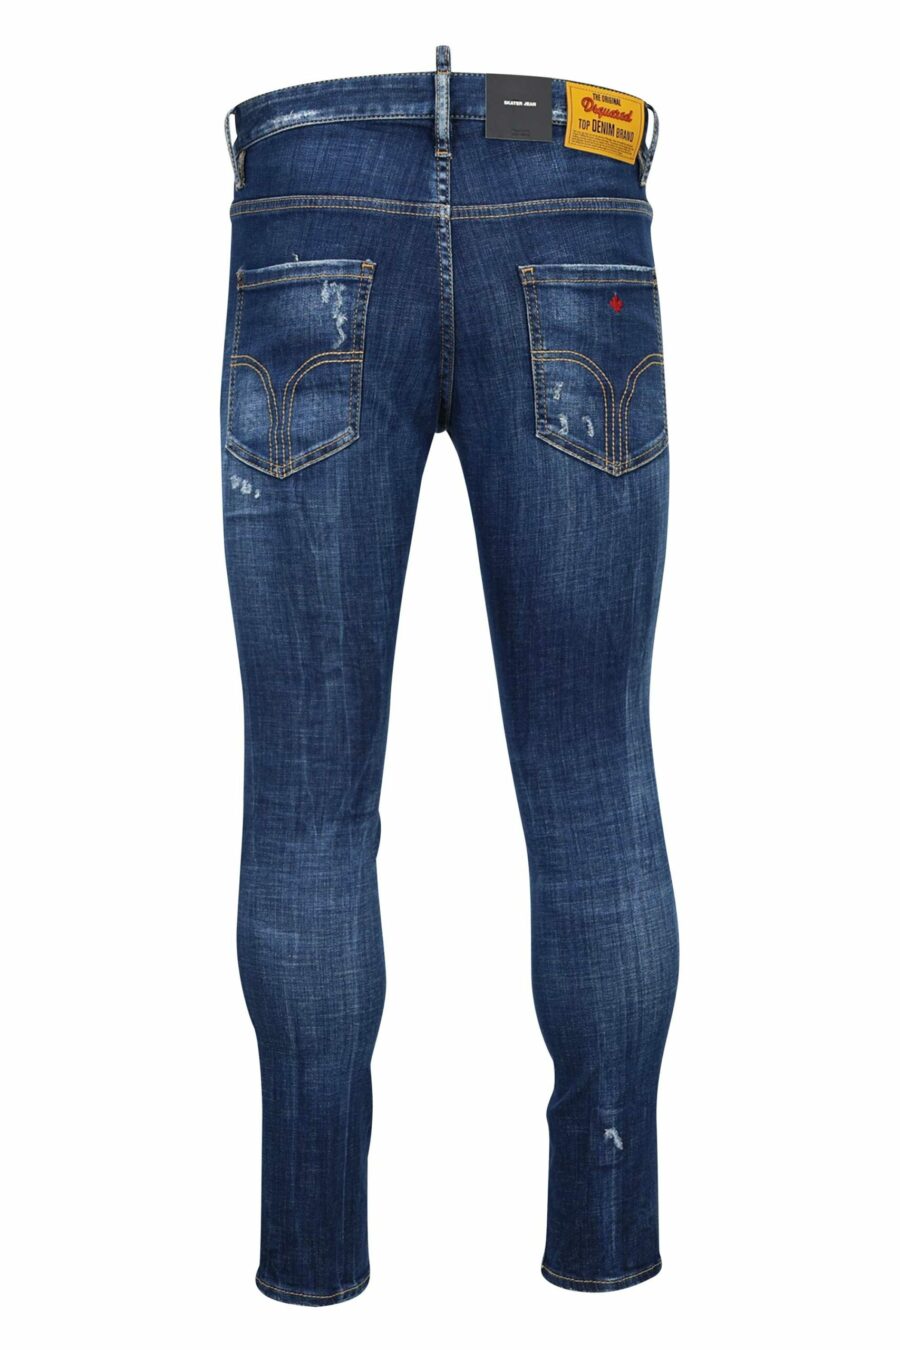 Semi-getragene blaue "Skater Jeans" - 8054148101503 2 skaliert